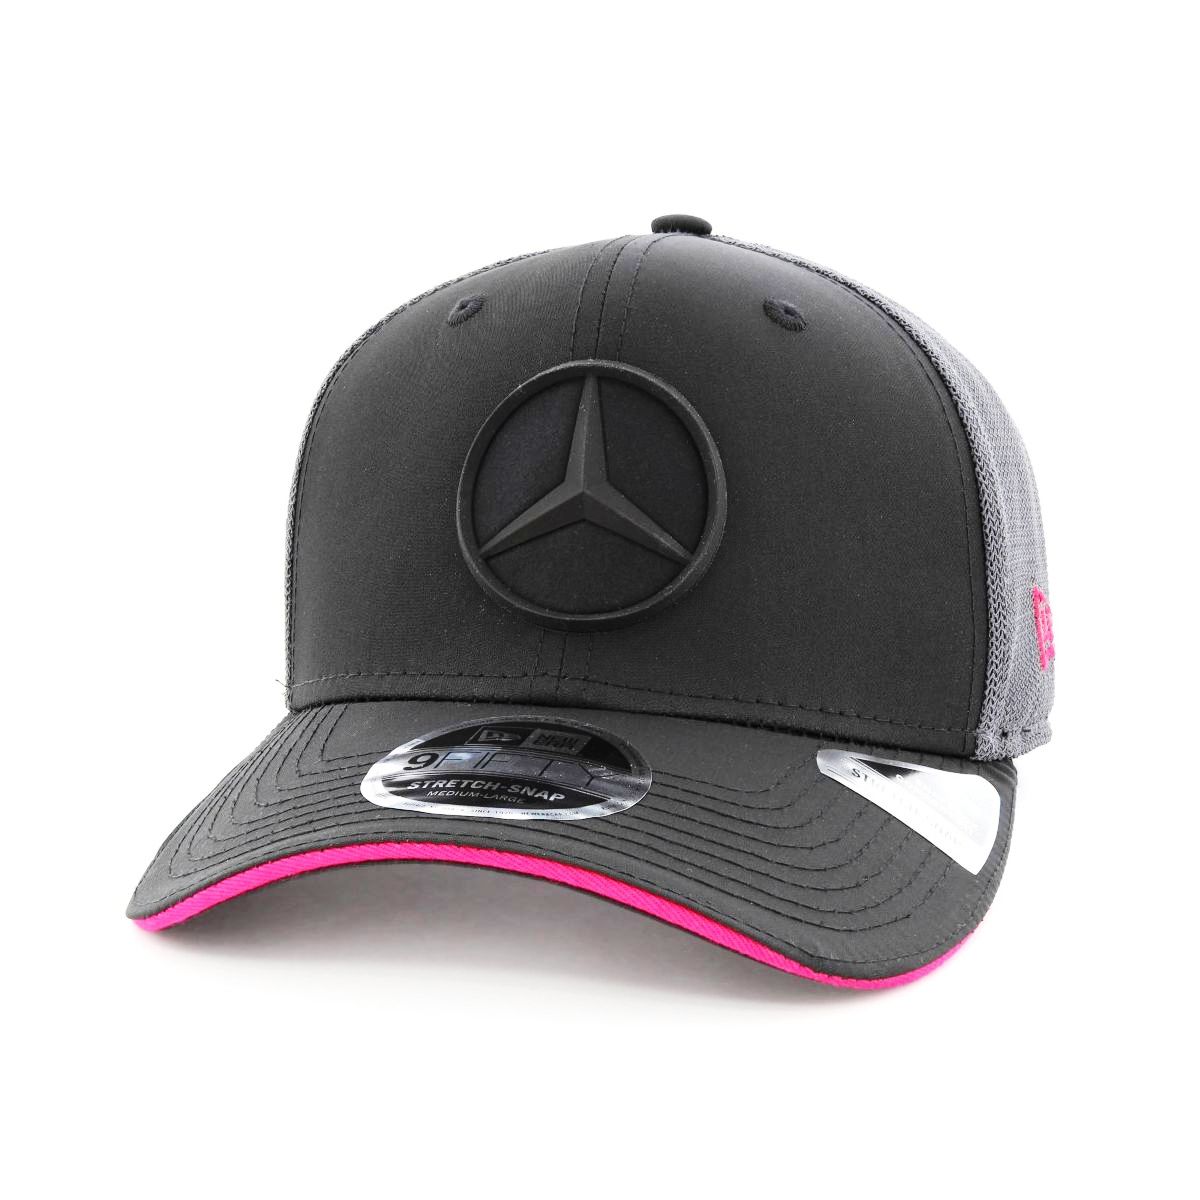 New Era Mercedes E-Sports Replica Men's Cap Black M/L